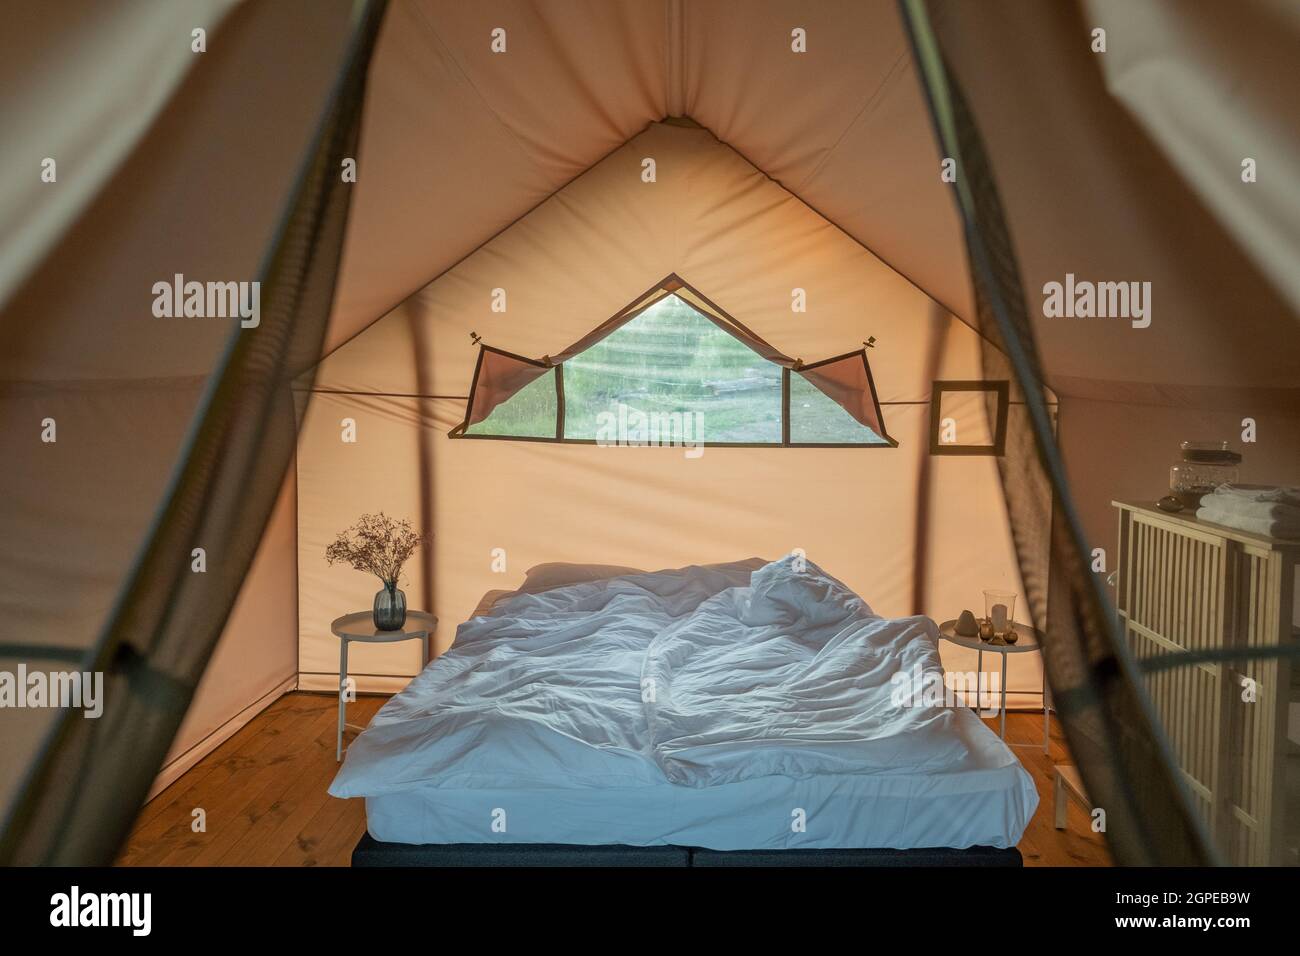 Cama doble deshecha entre pequeñas mesas redondas dentro del dormitorio de una casa glamorosa Foto de stock